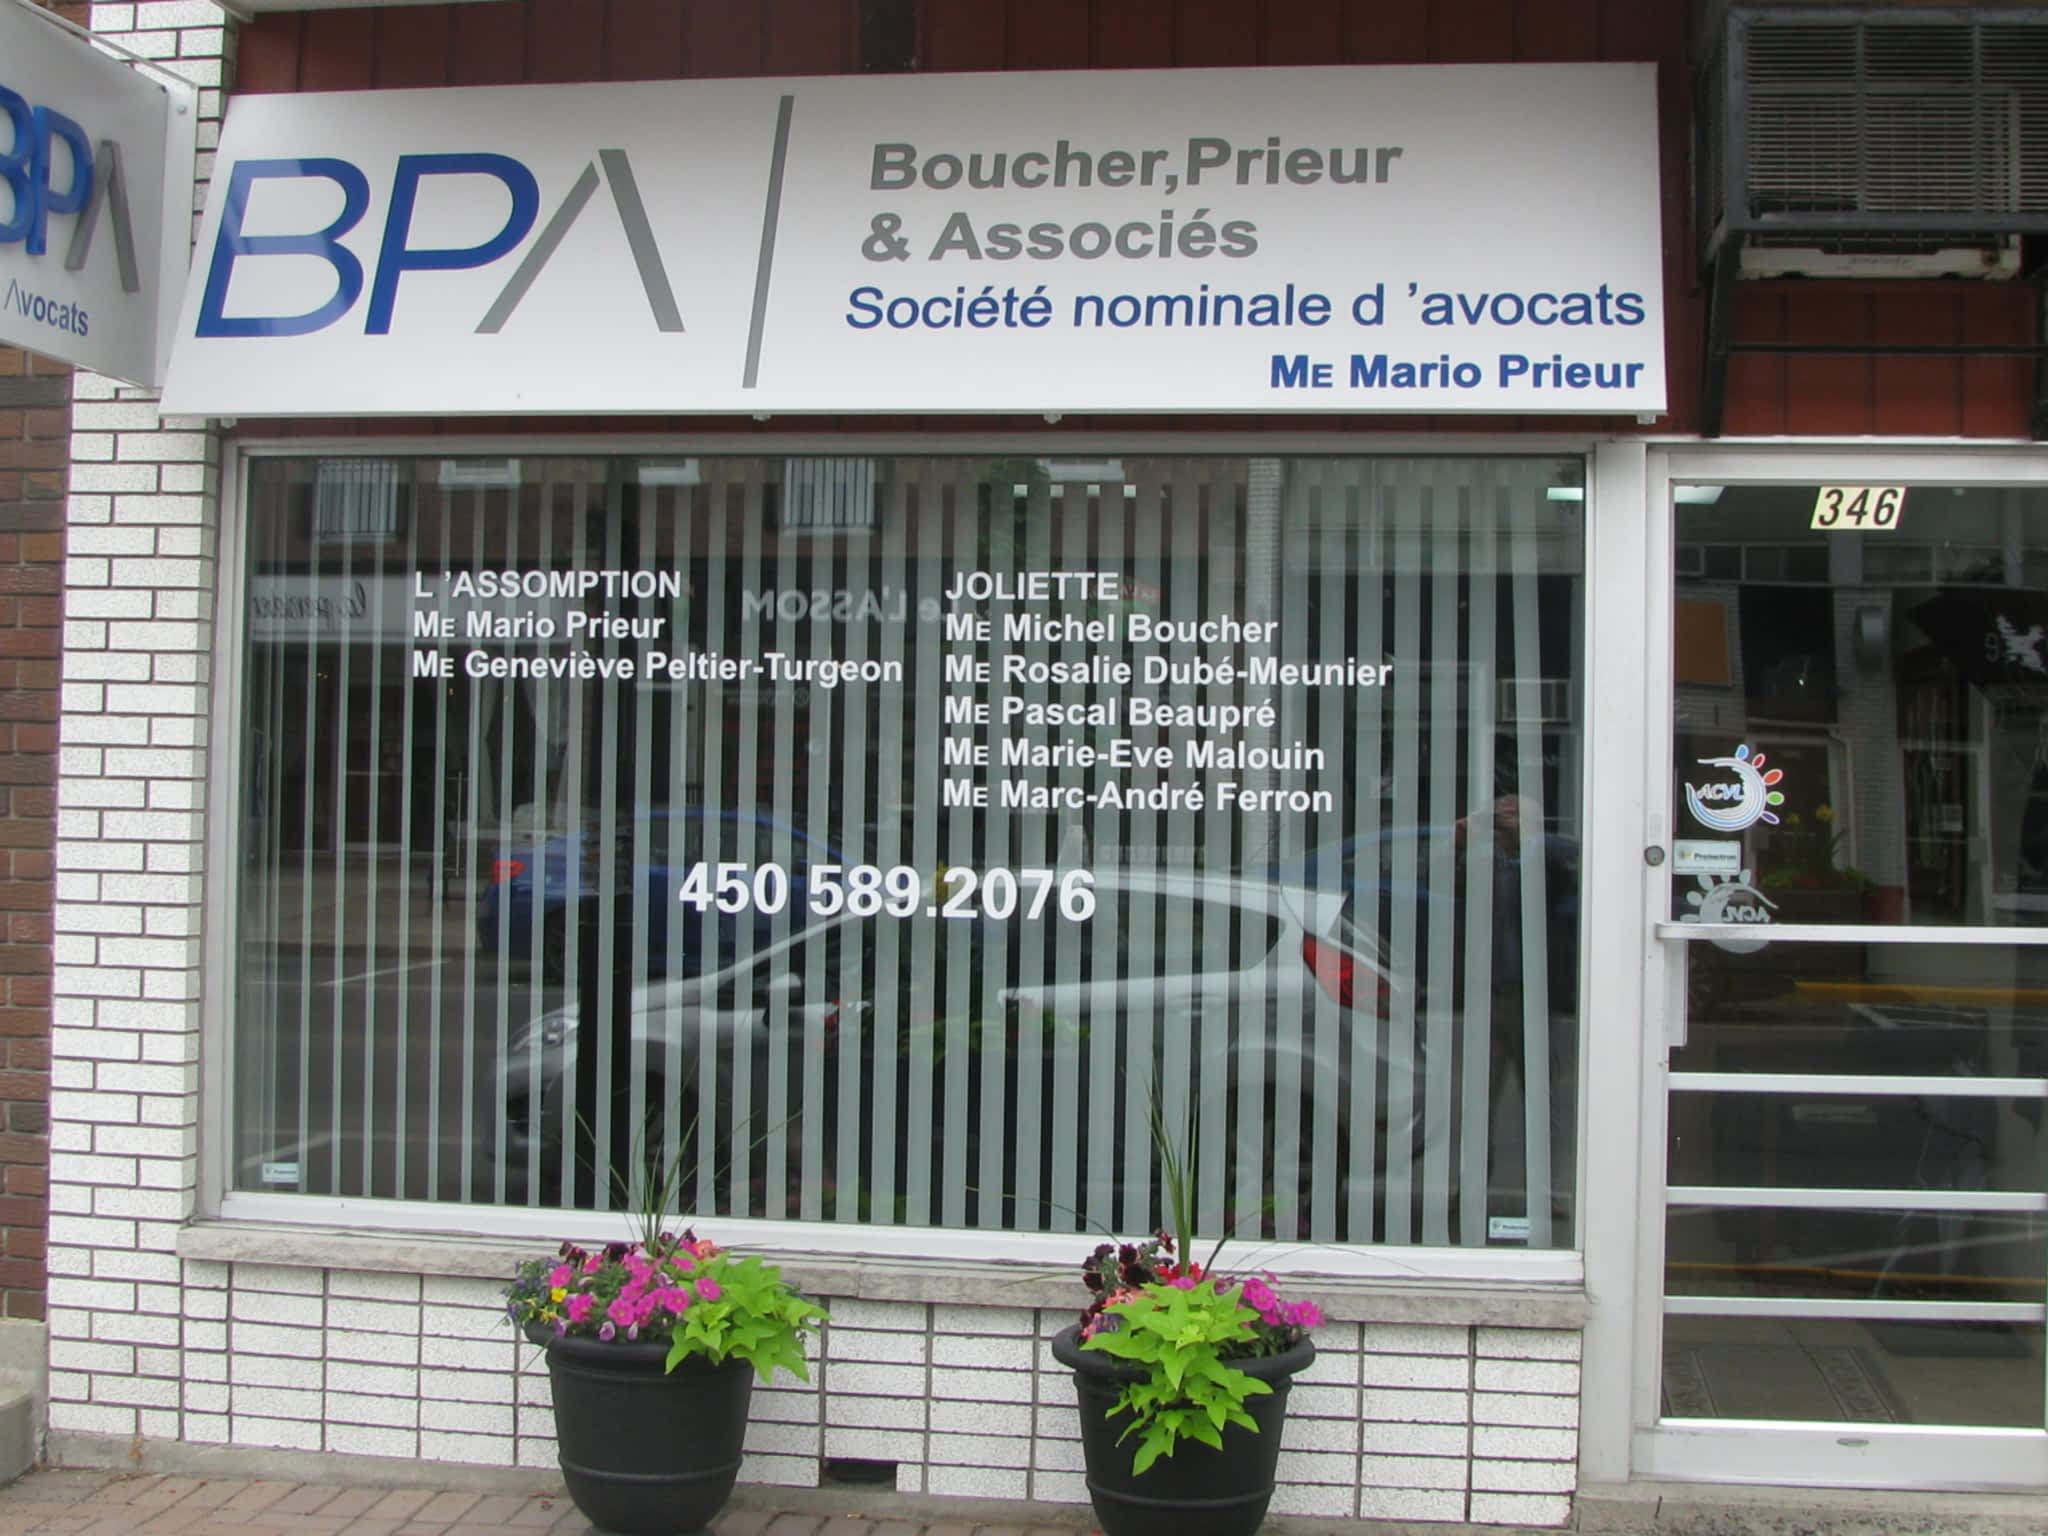 photo Boucher, Prieur & Associés Société Nominale d'Avocats